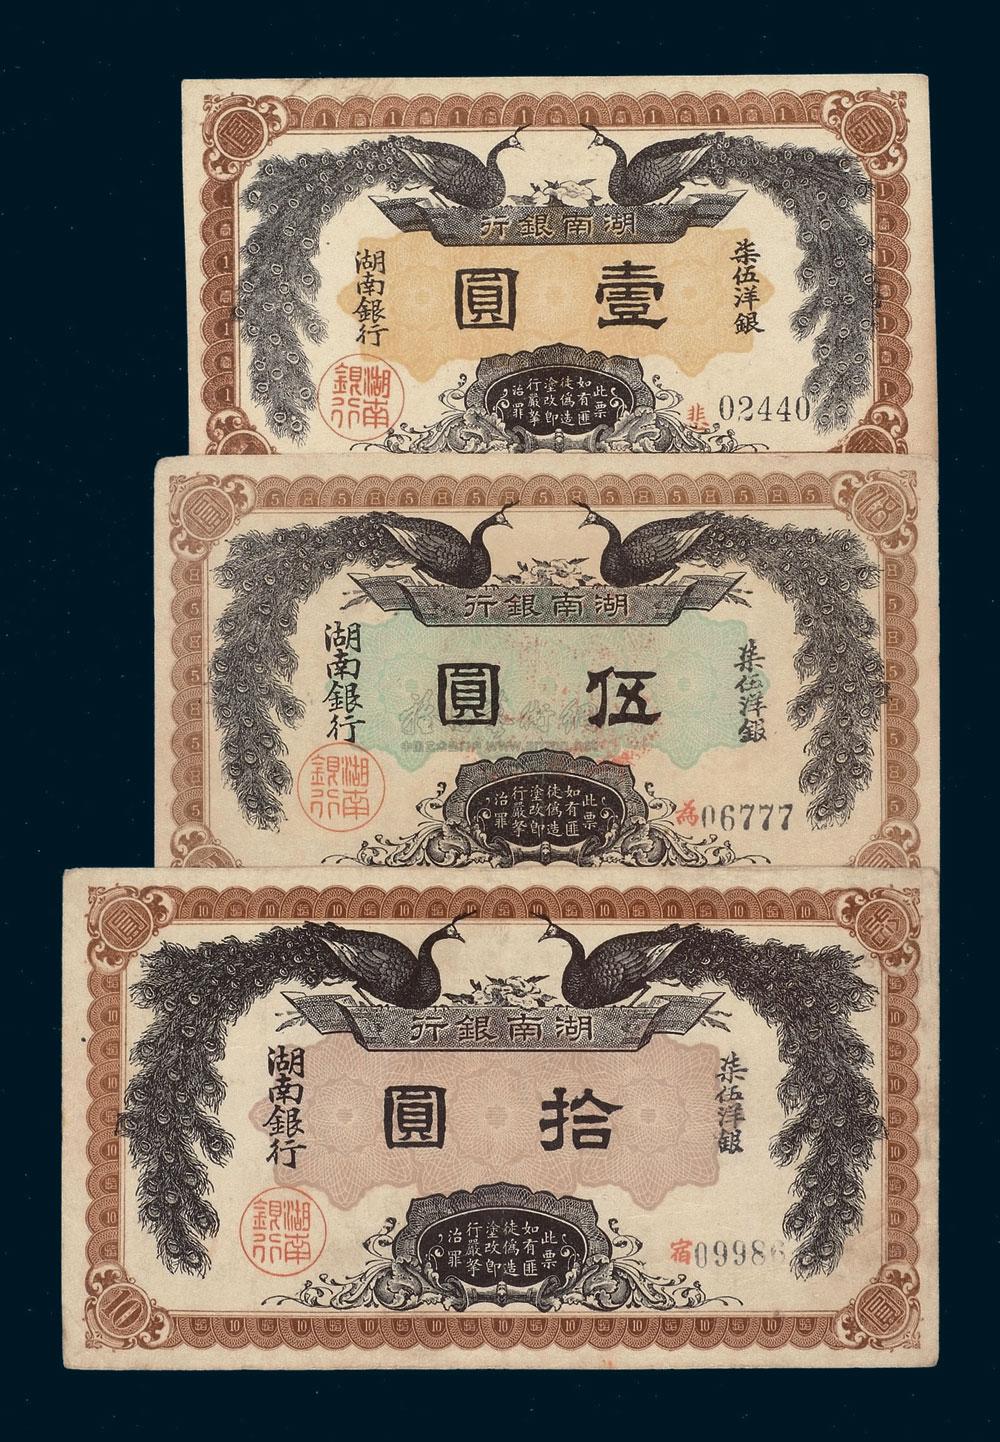 1227 民国元年湖南银行洋银两票壹圆,伍圆,拾圆各一枚